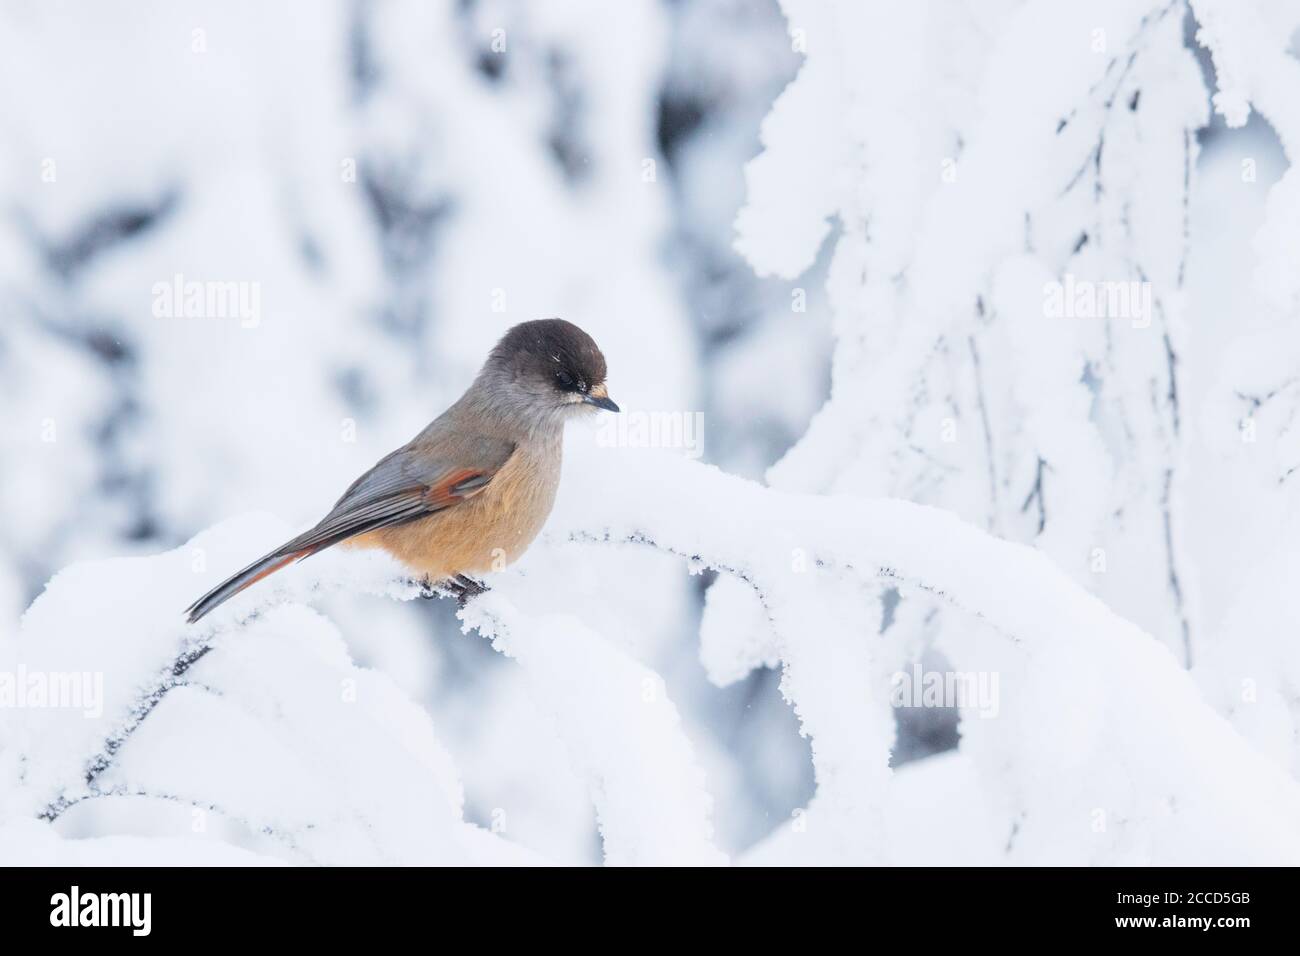 Curieux oiseau finlandais geai de Sibérie, Perisoreus infaustus sur une branche neigeuse dans le pays des merveilles d'hiver à Valtavaara est tombé près de Kuusamo, dans le nord de la Finlande. Banque D'Images